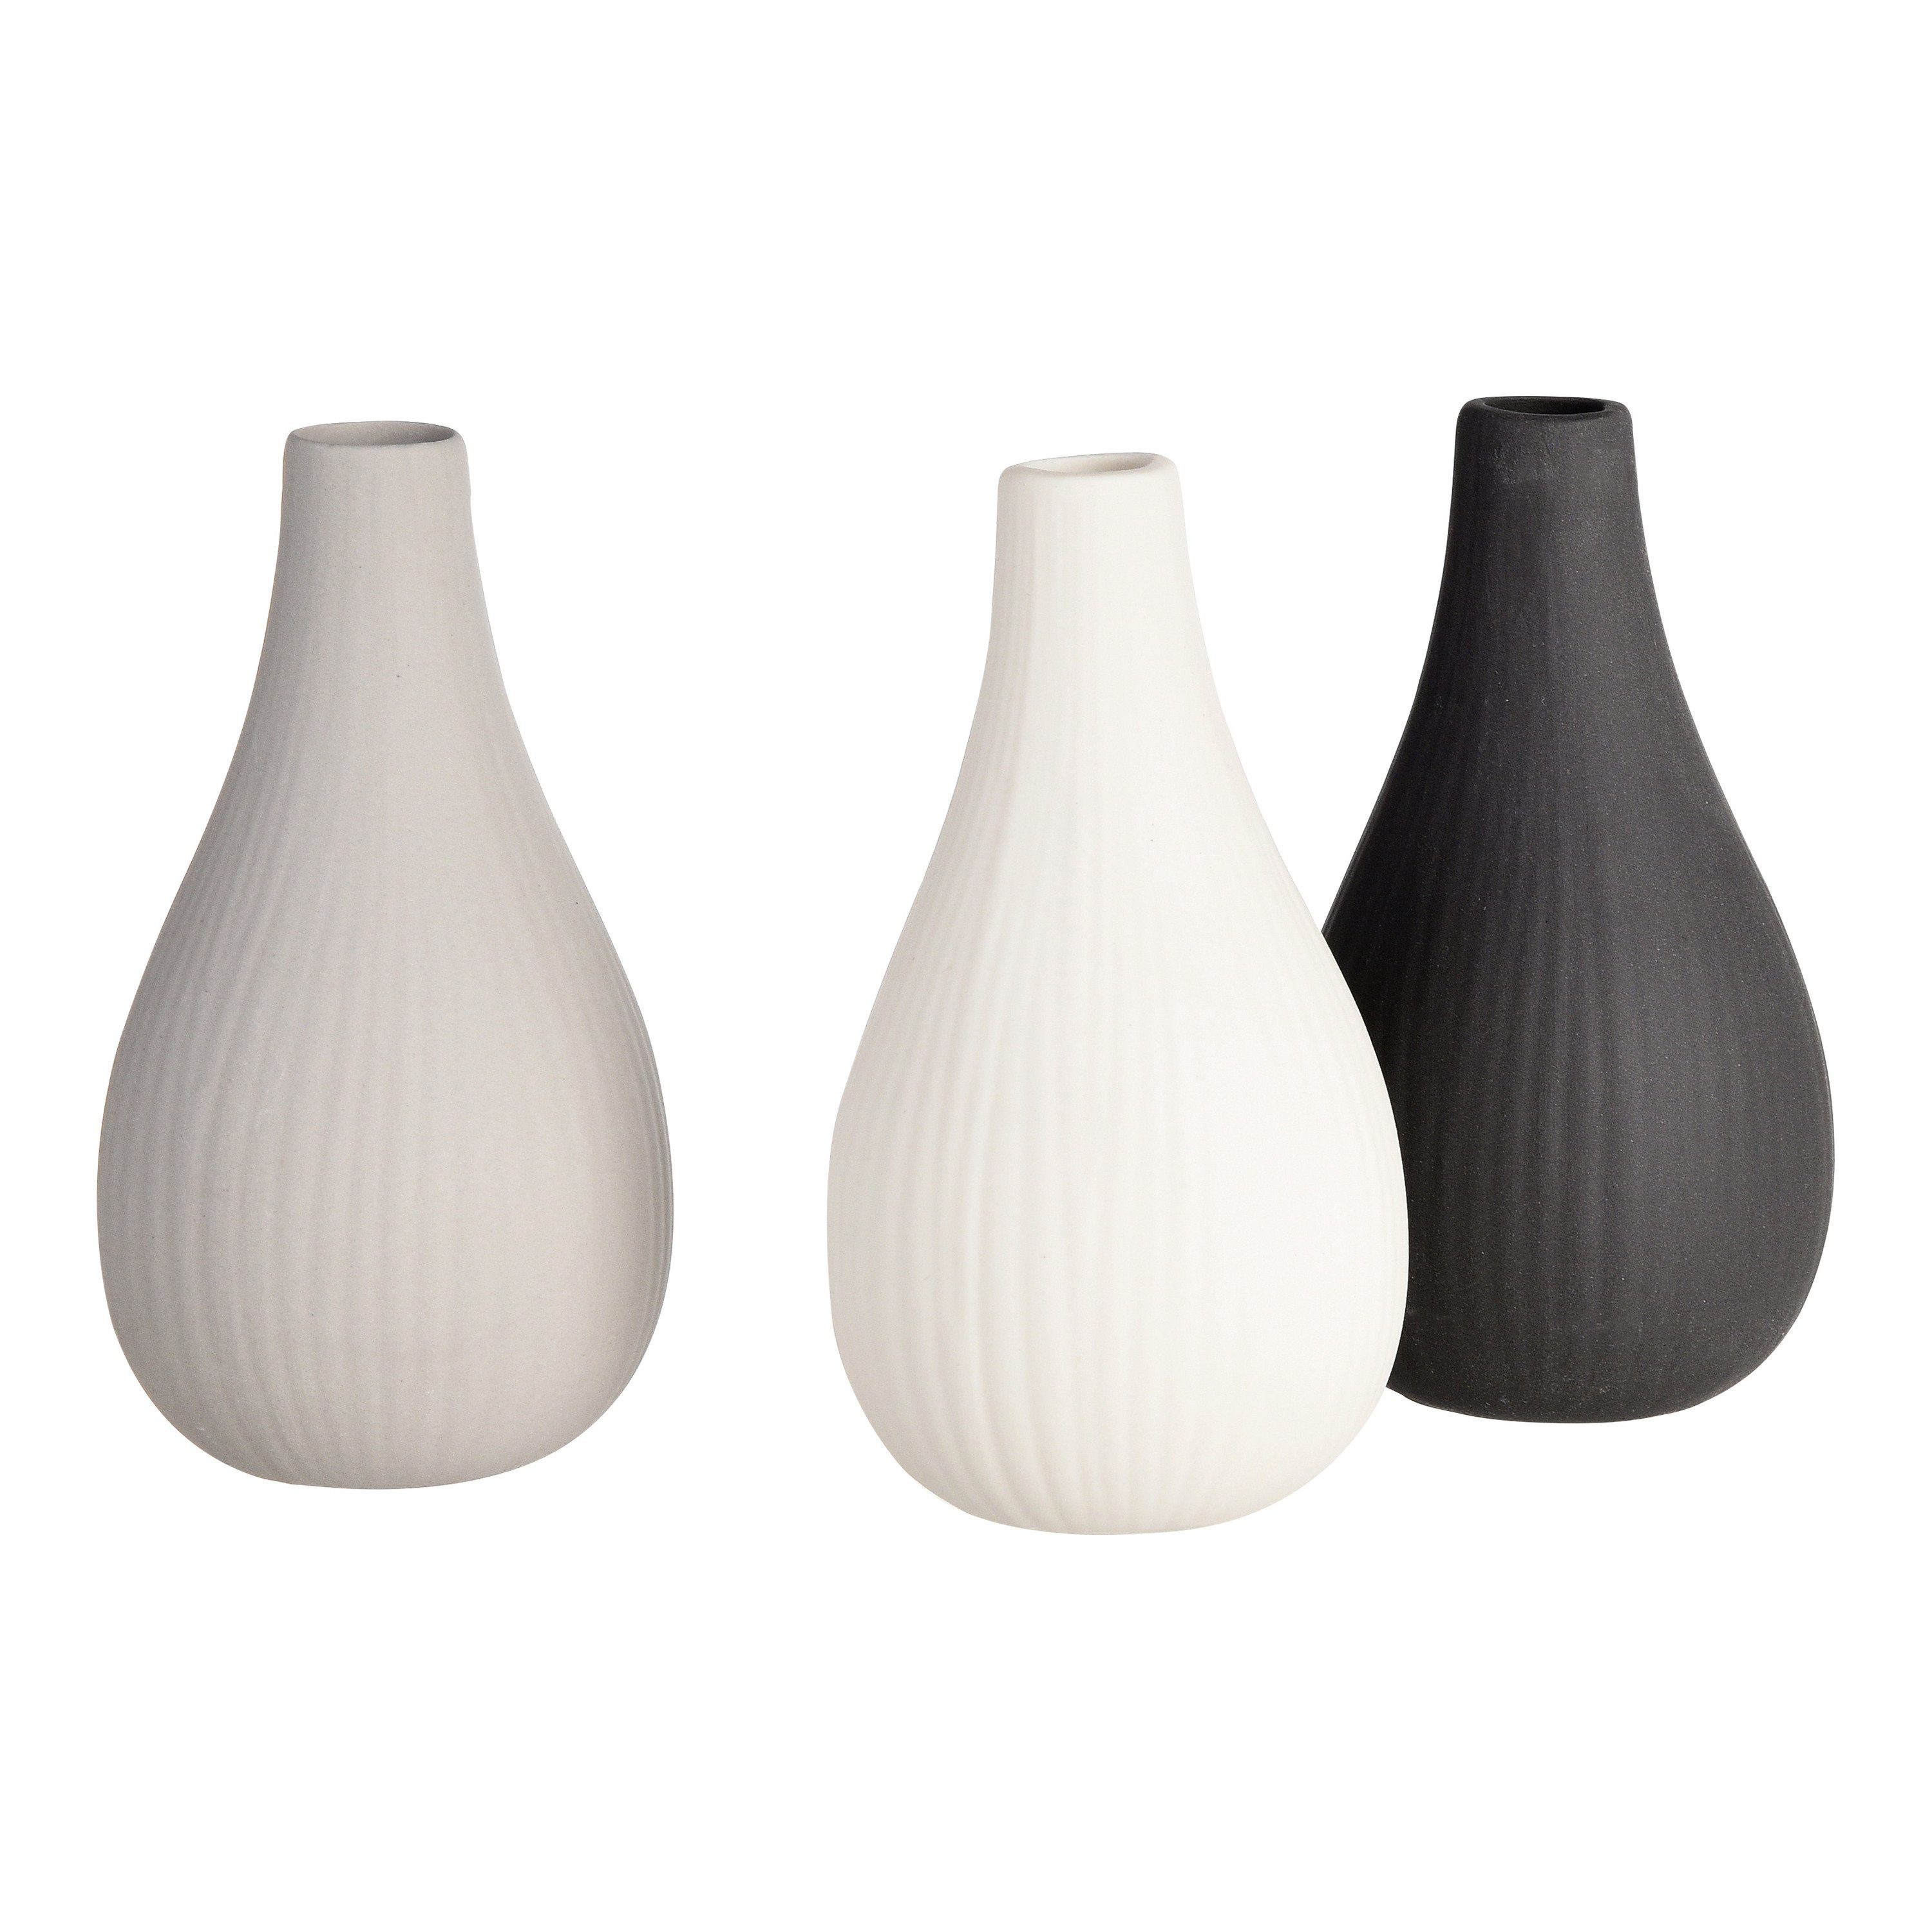 Depot Dekovase Vasen-Set Rills (Packung, 3 Vasen in unterschiedlichen Farben)